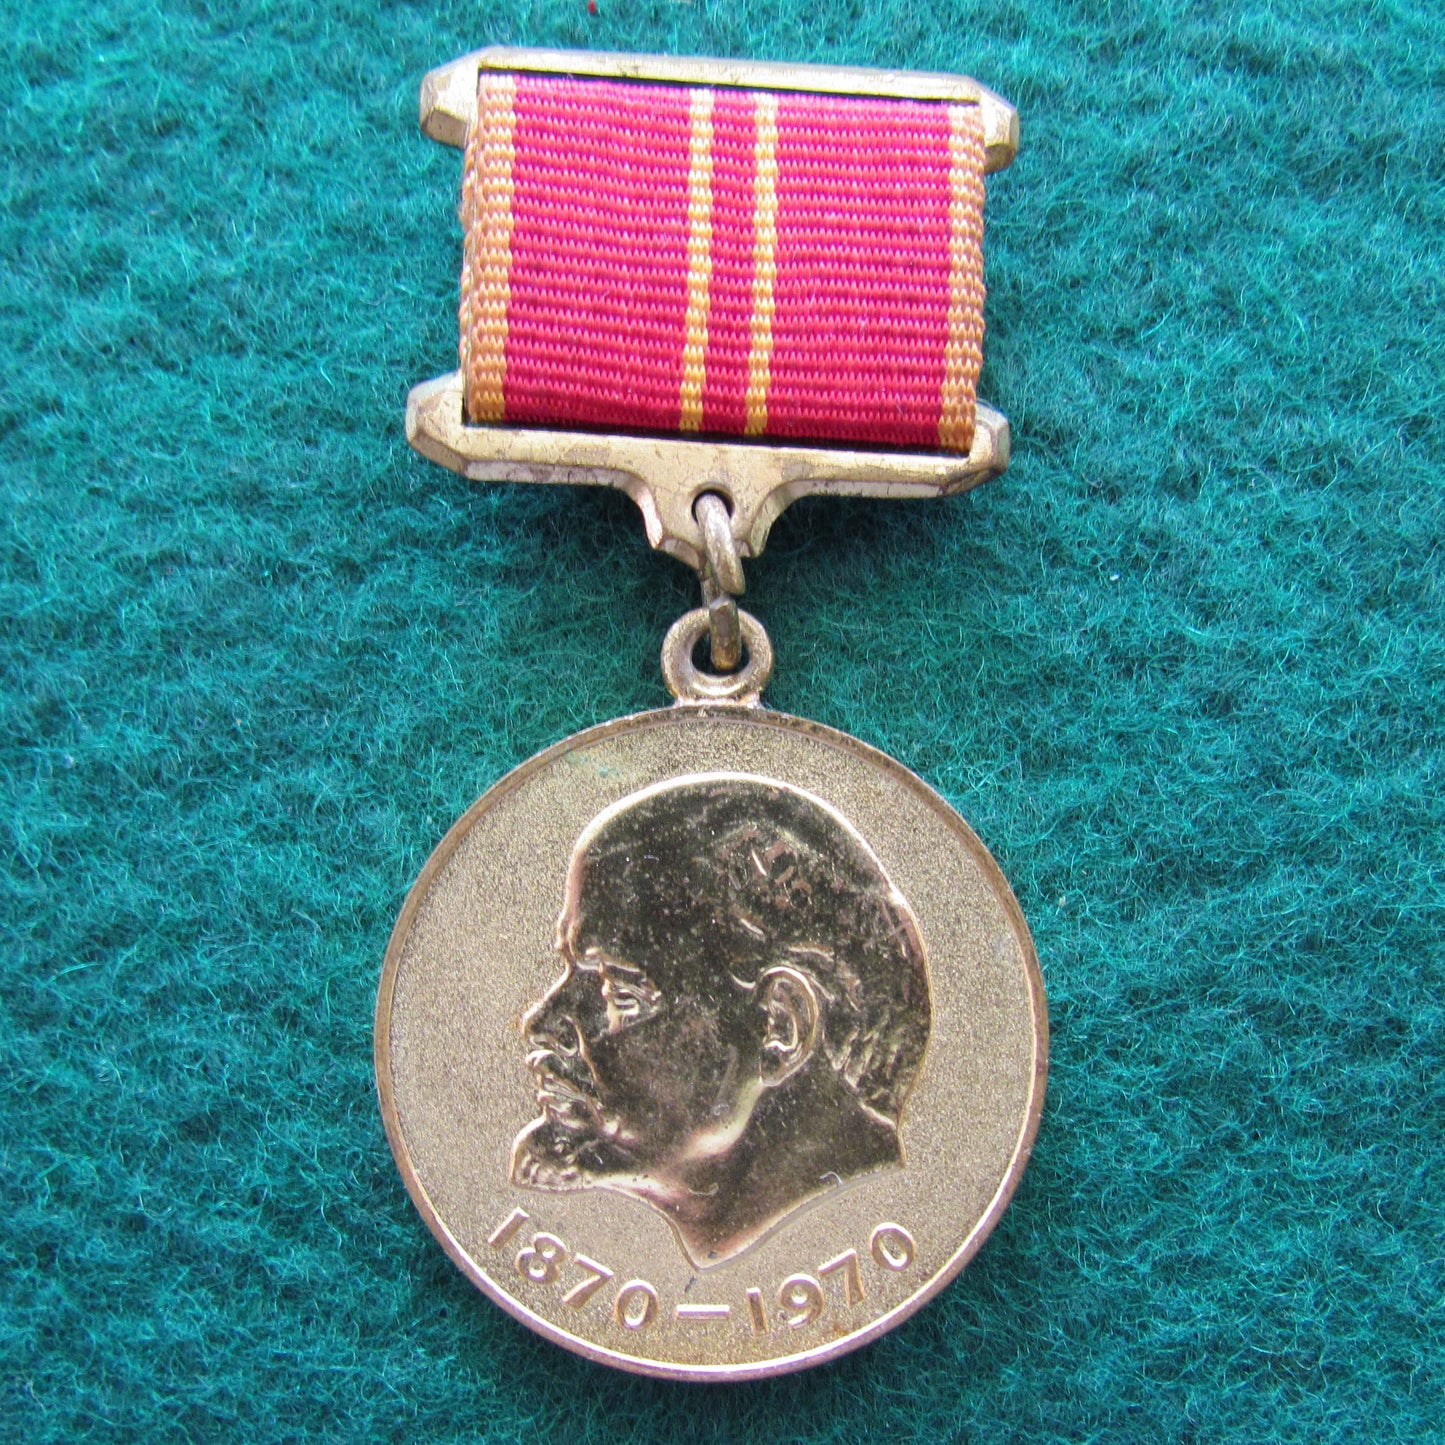 Lenin Commemorative Centenary Jubilee Medal 1870 - 1970